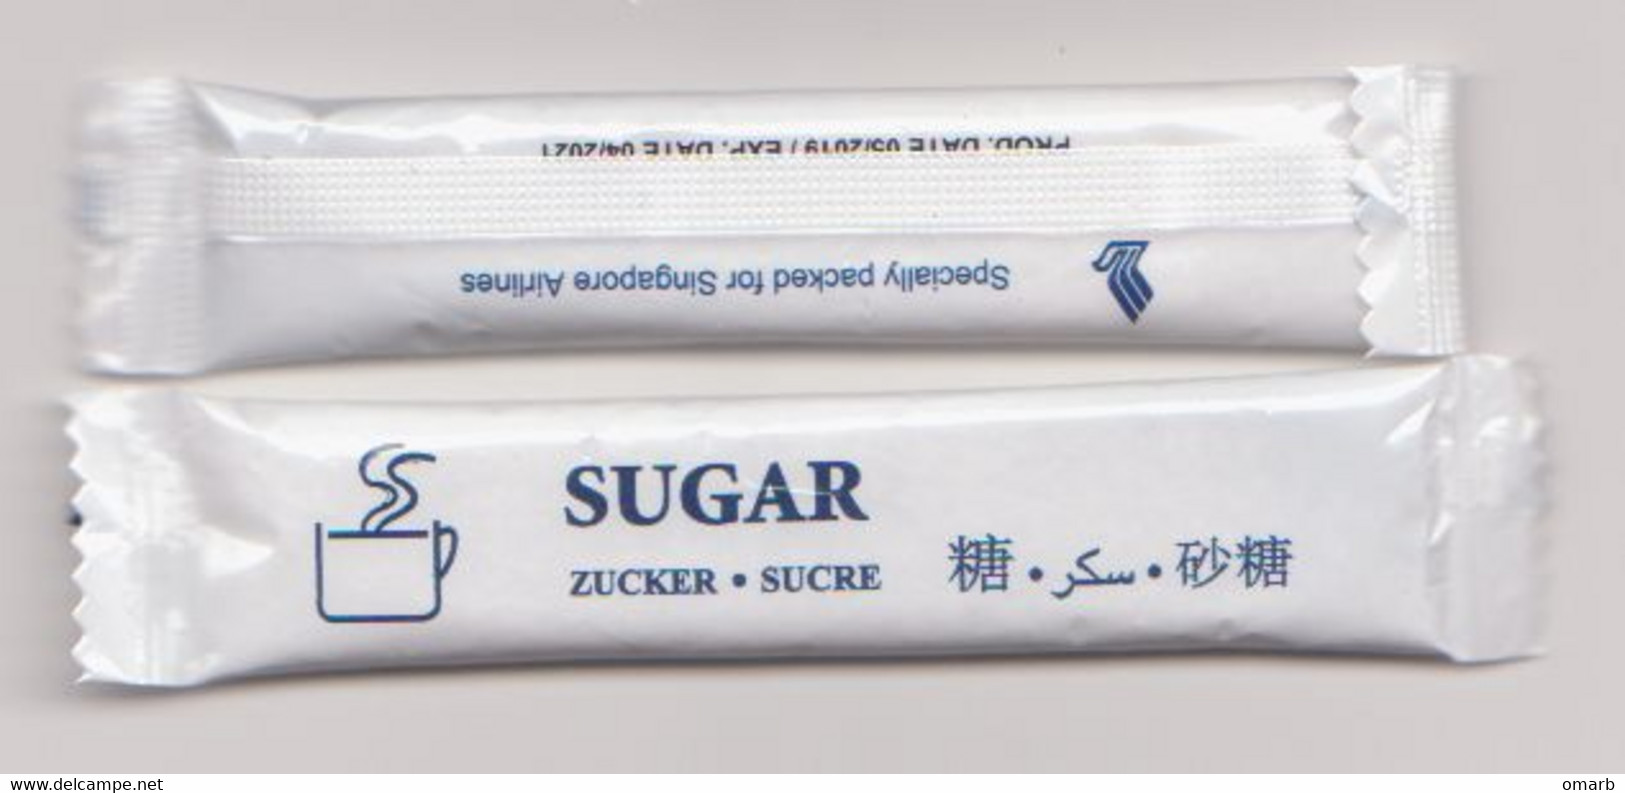 Zuc039 Singpore Airlines Avion Compagnia Aerea, Merchandising, Bustina Zucchero Azucar Sucre Sugar - Materiale Promozionale